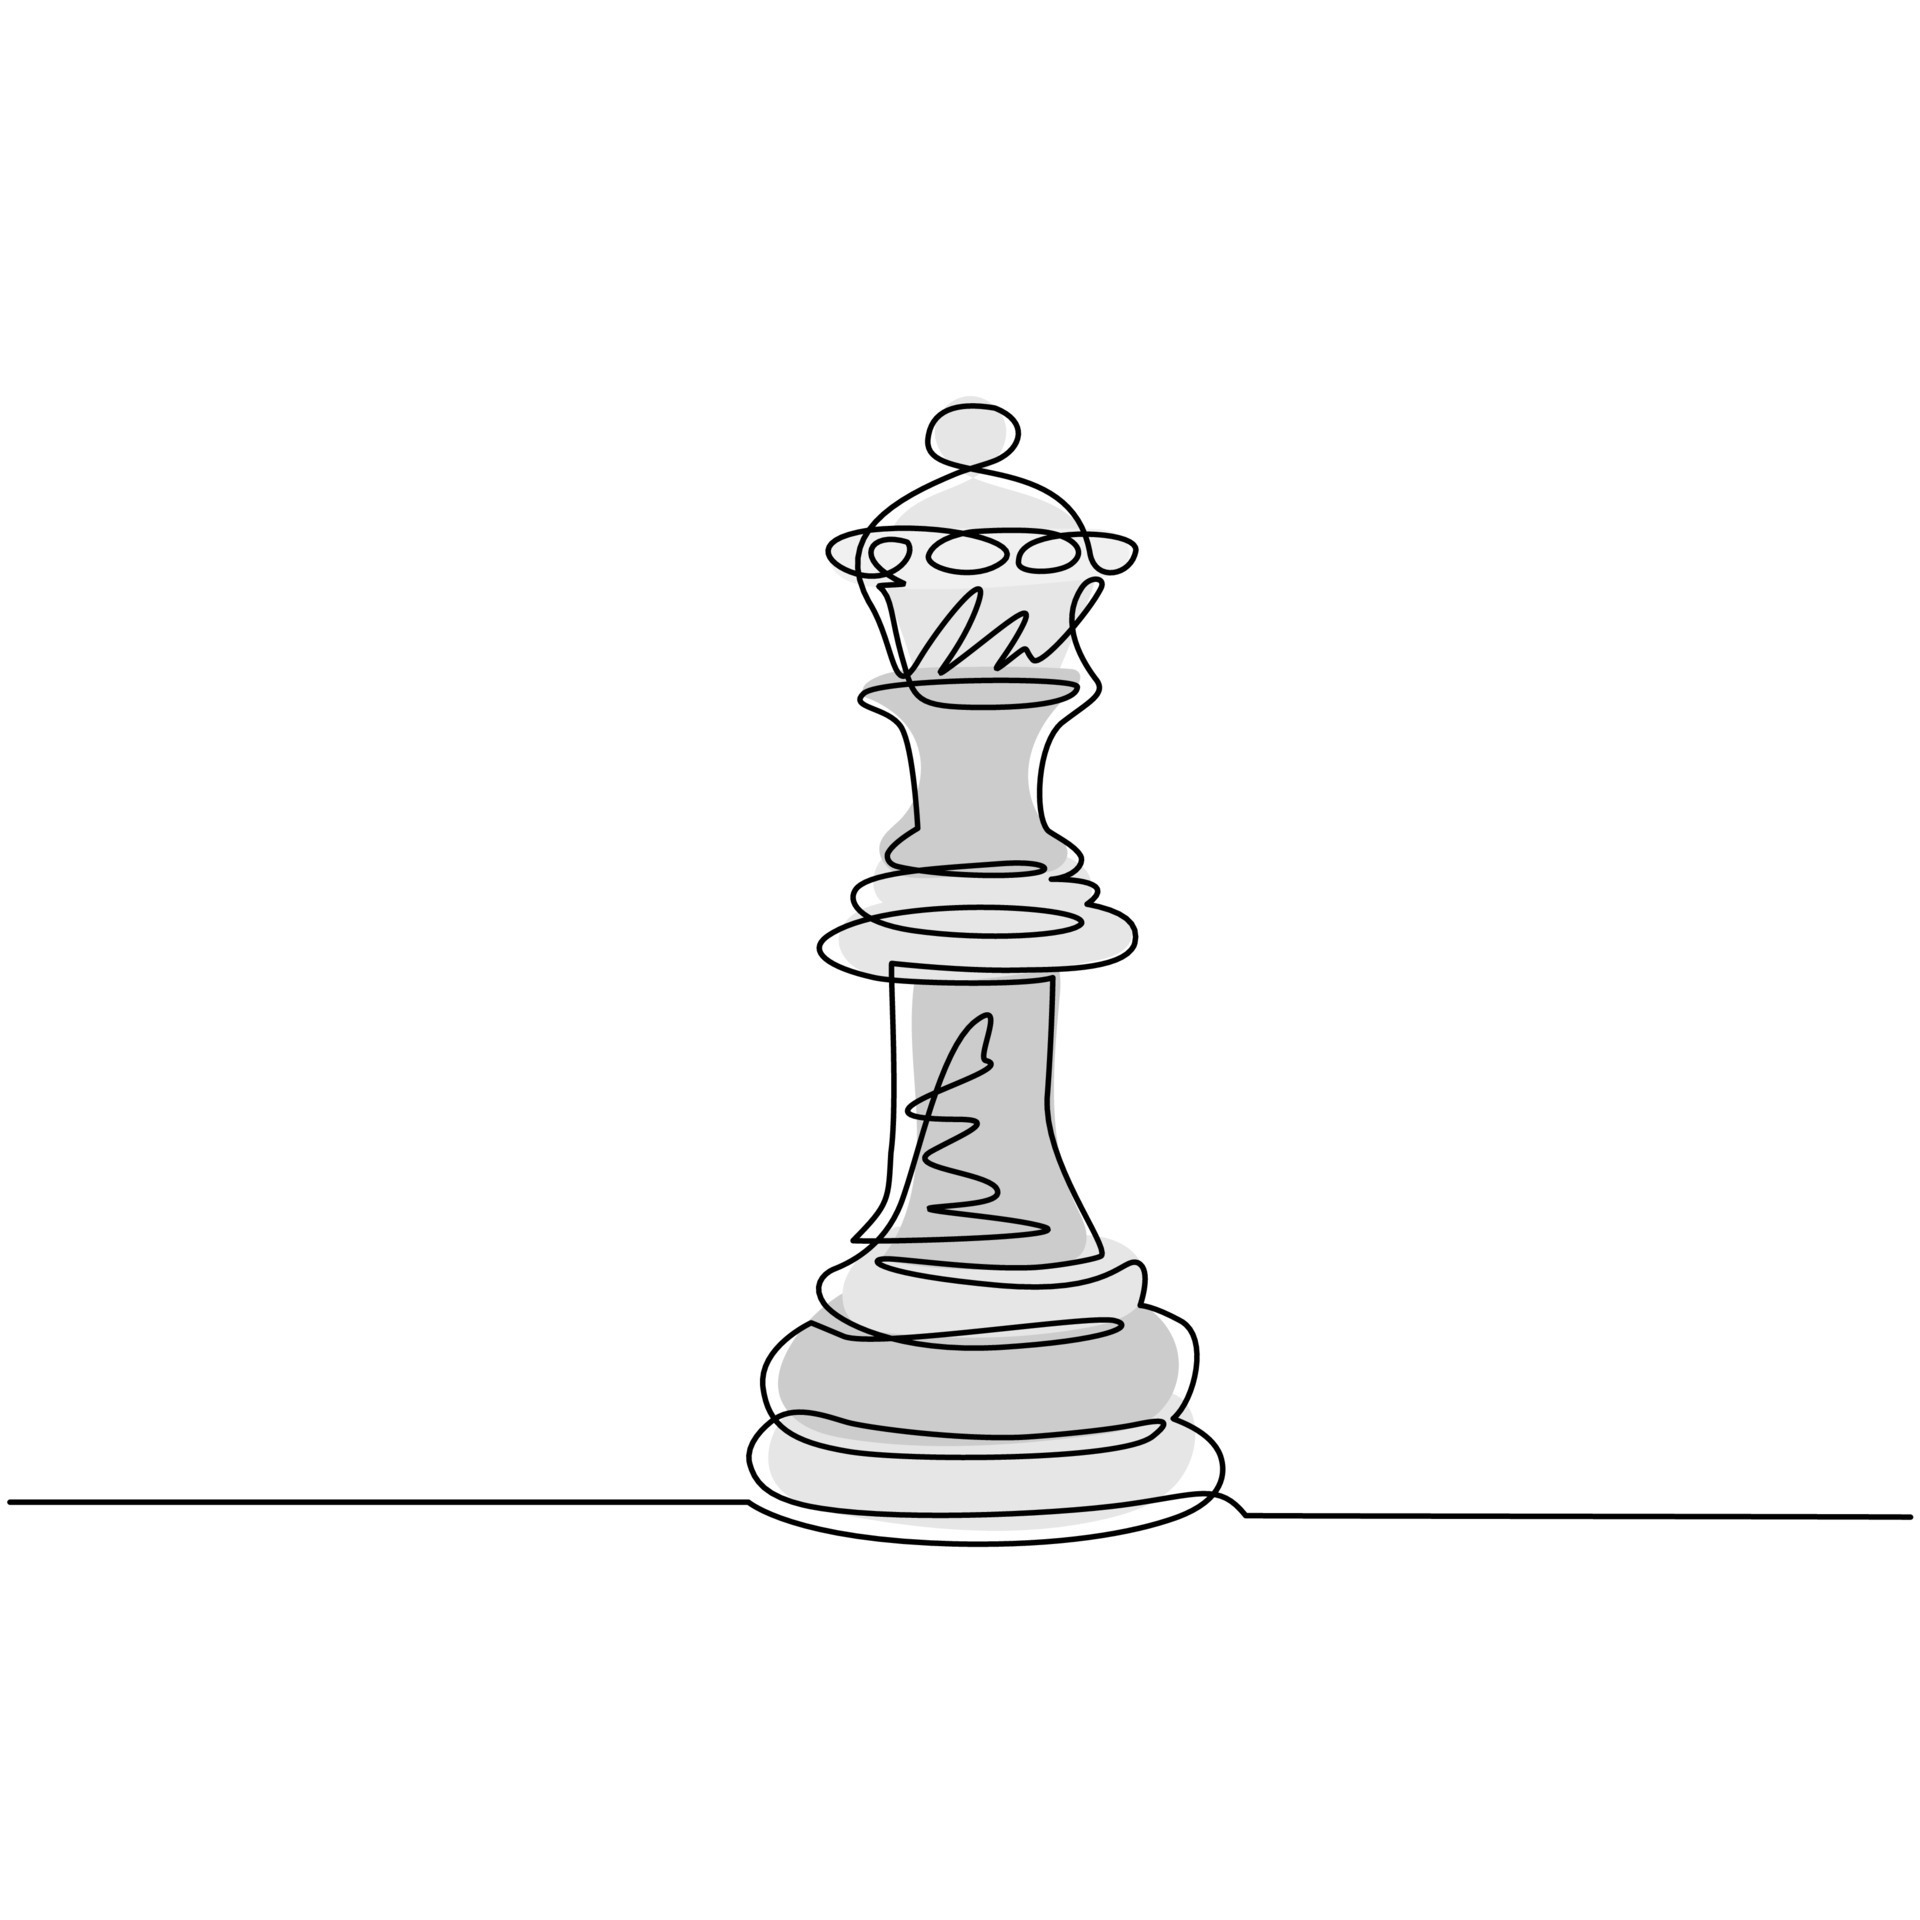 única linha contínua desenho do logotipo da rainha do xadrez